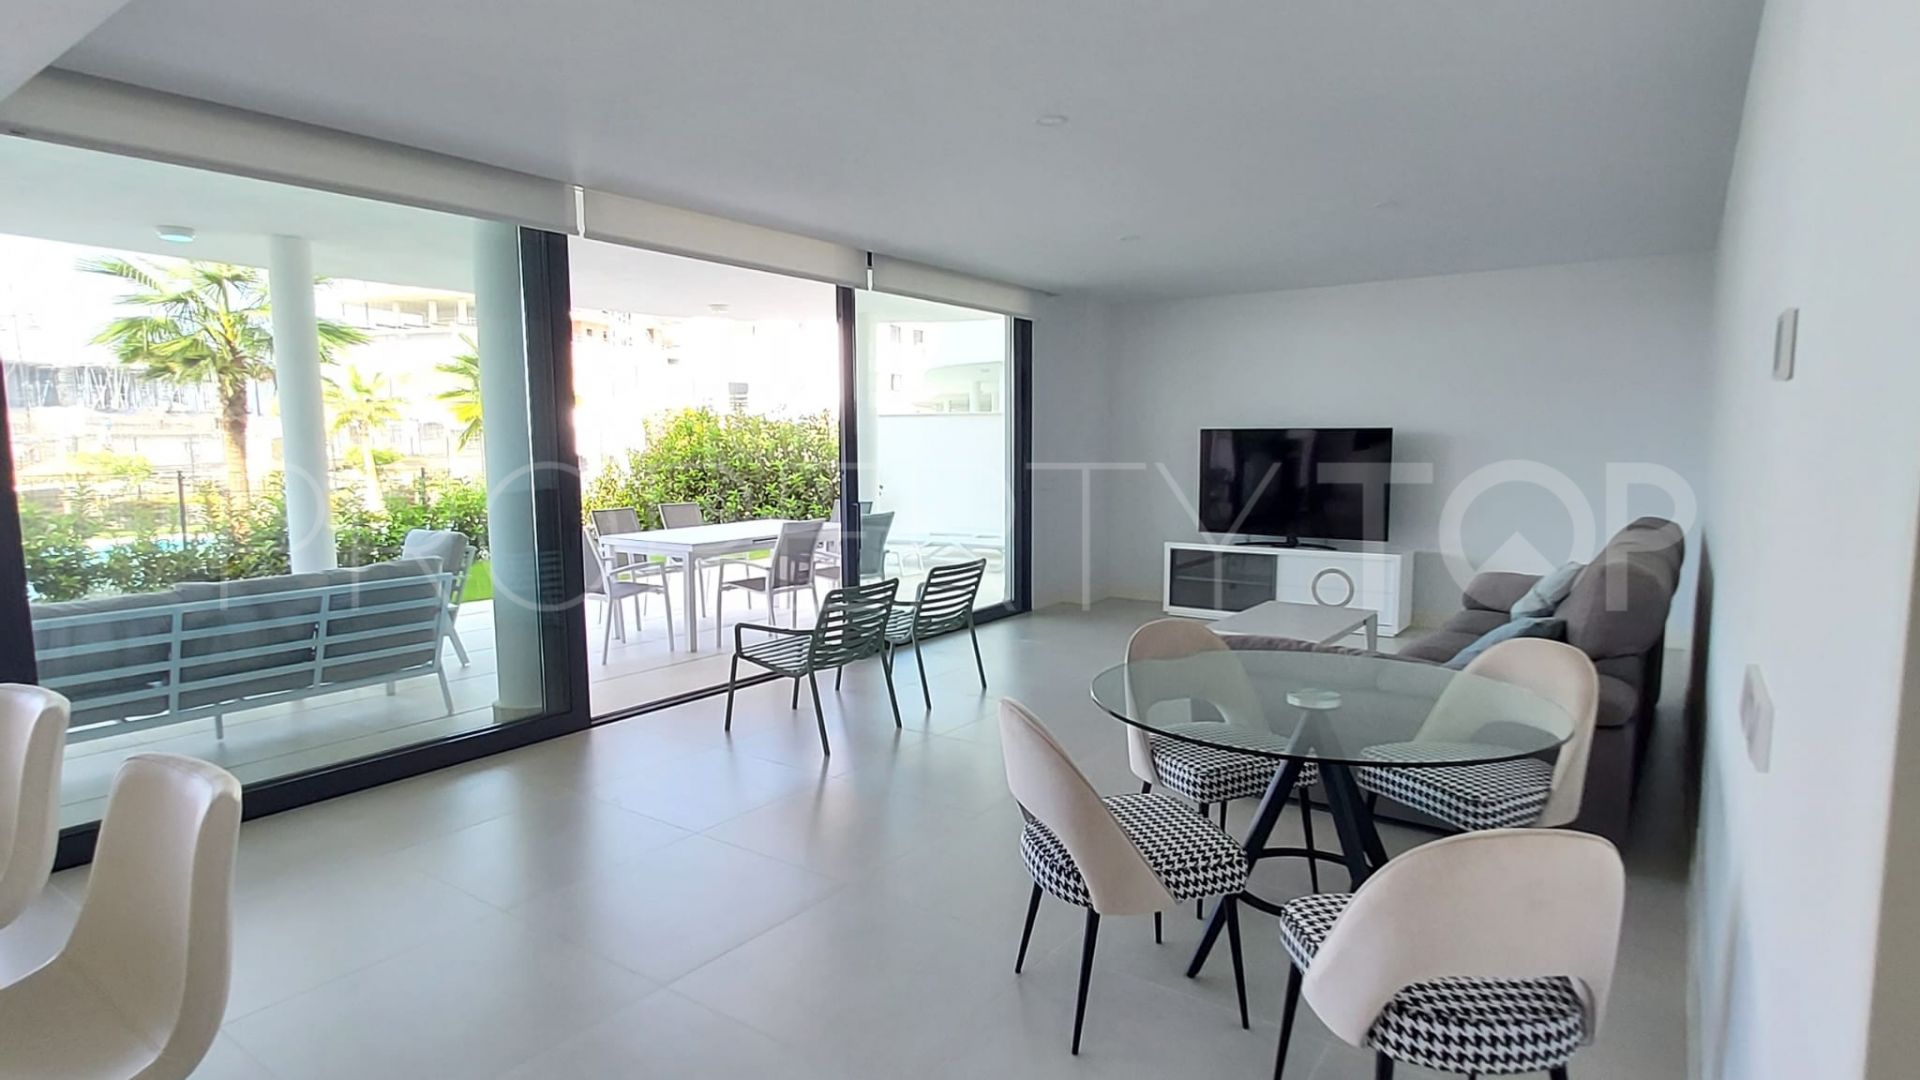 For sale ground floor apartment in El Higueron with 3 bedrooms